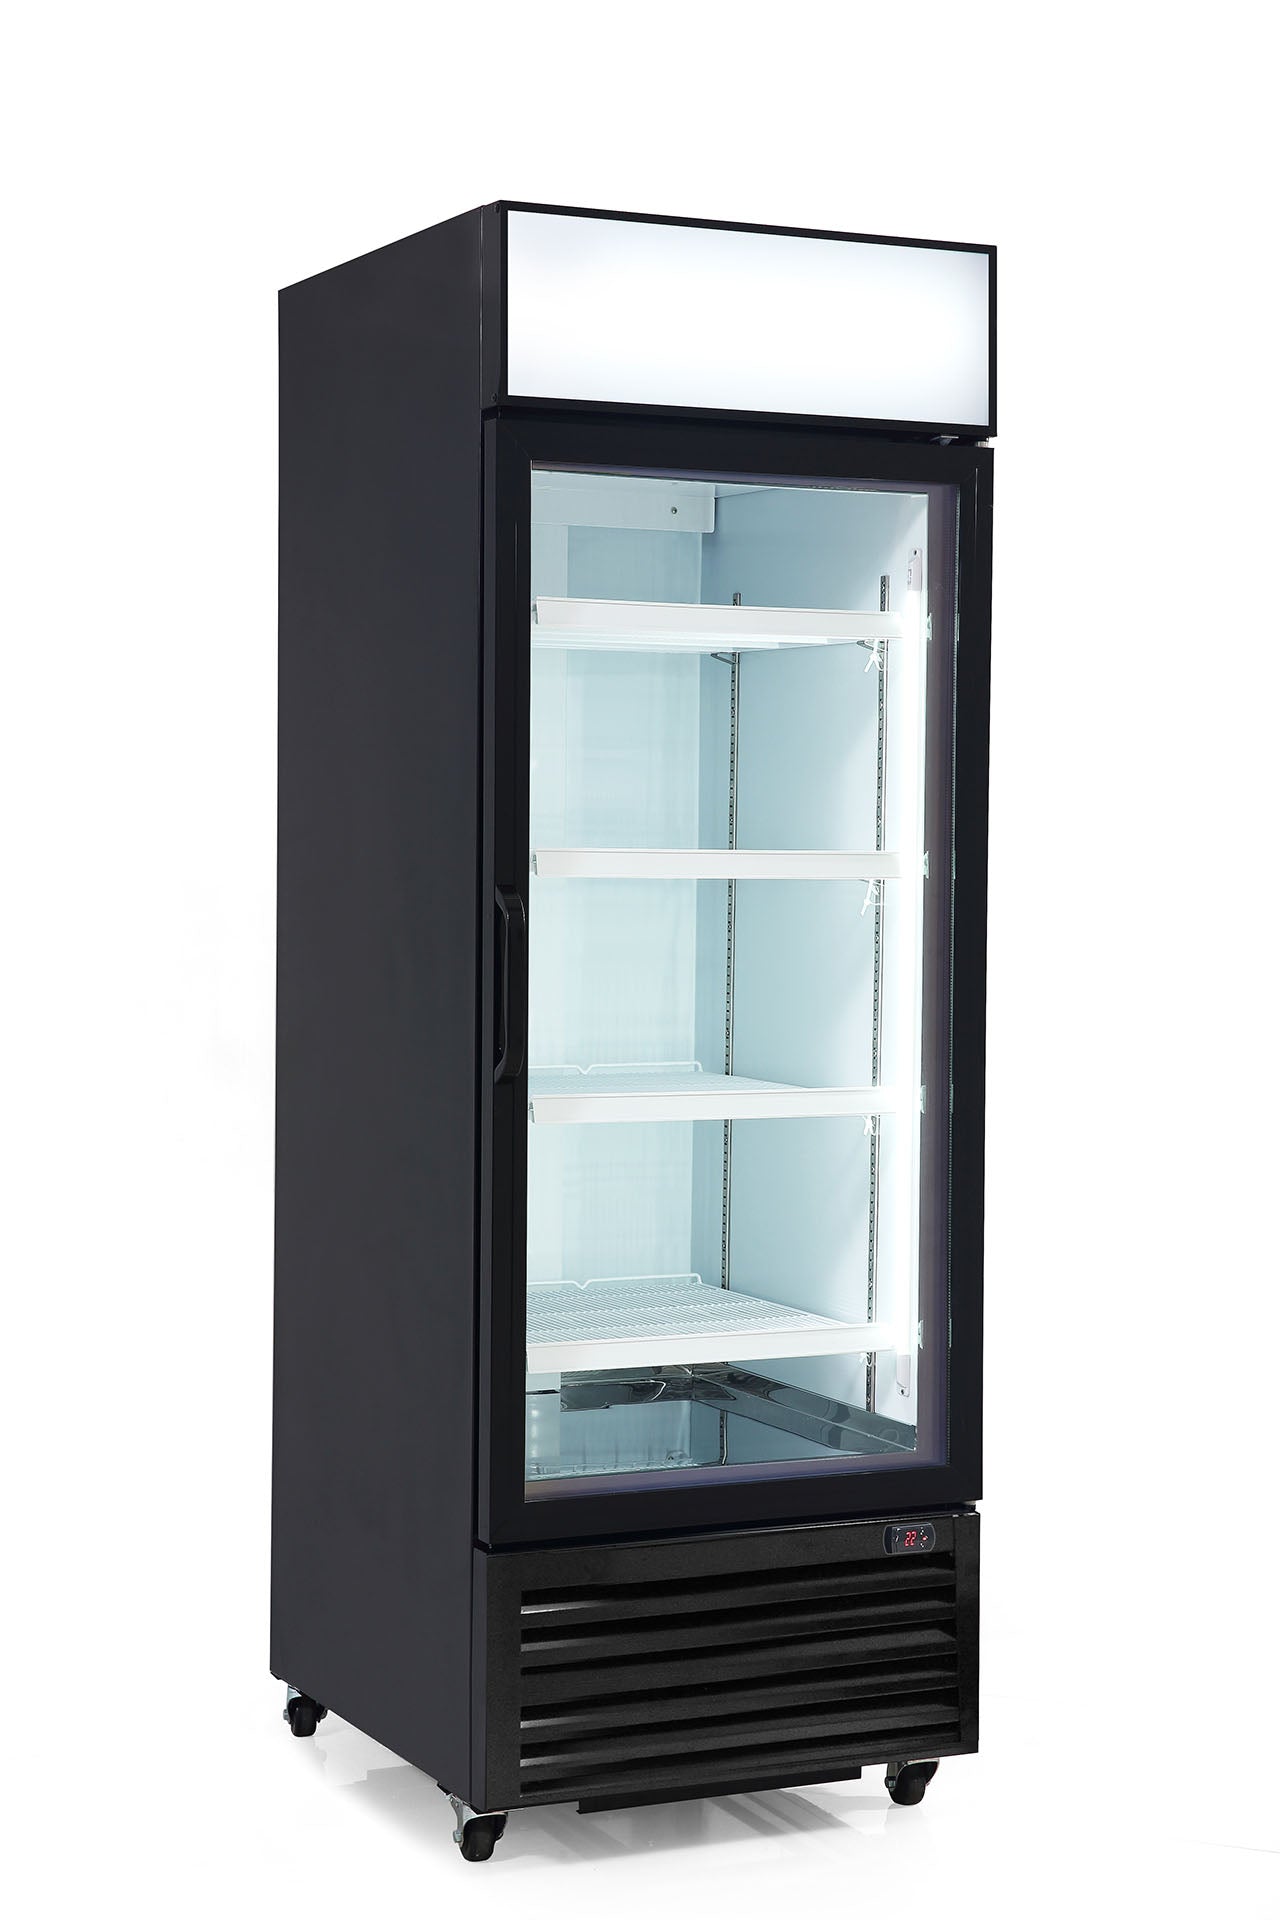 Chef AAA - KPR-23BG, Commercial 27" 1 Glass Door Merchandiser Refrigerator 20 cu. ft.